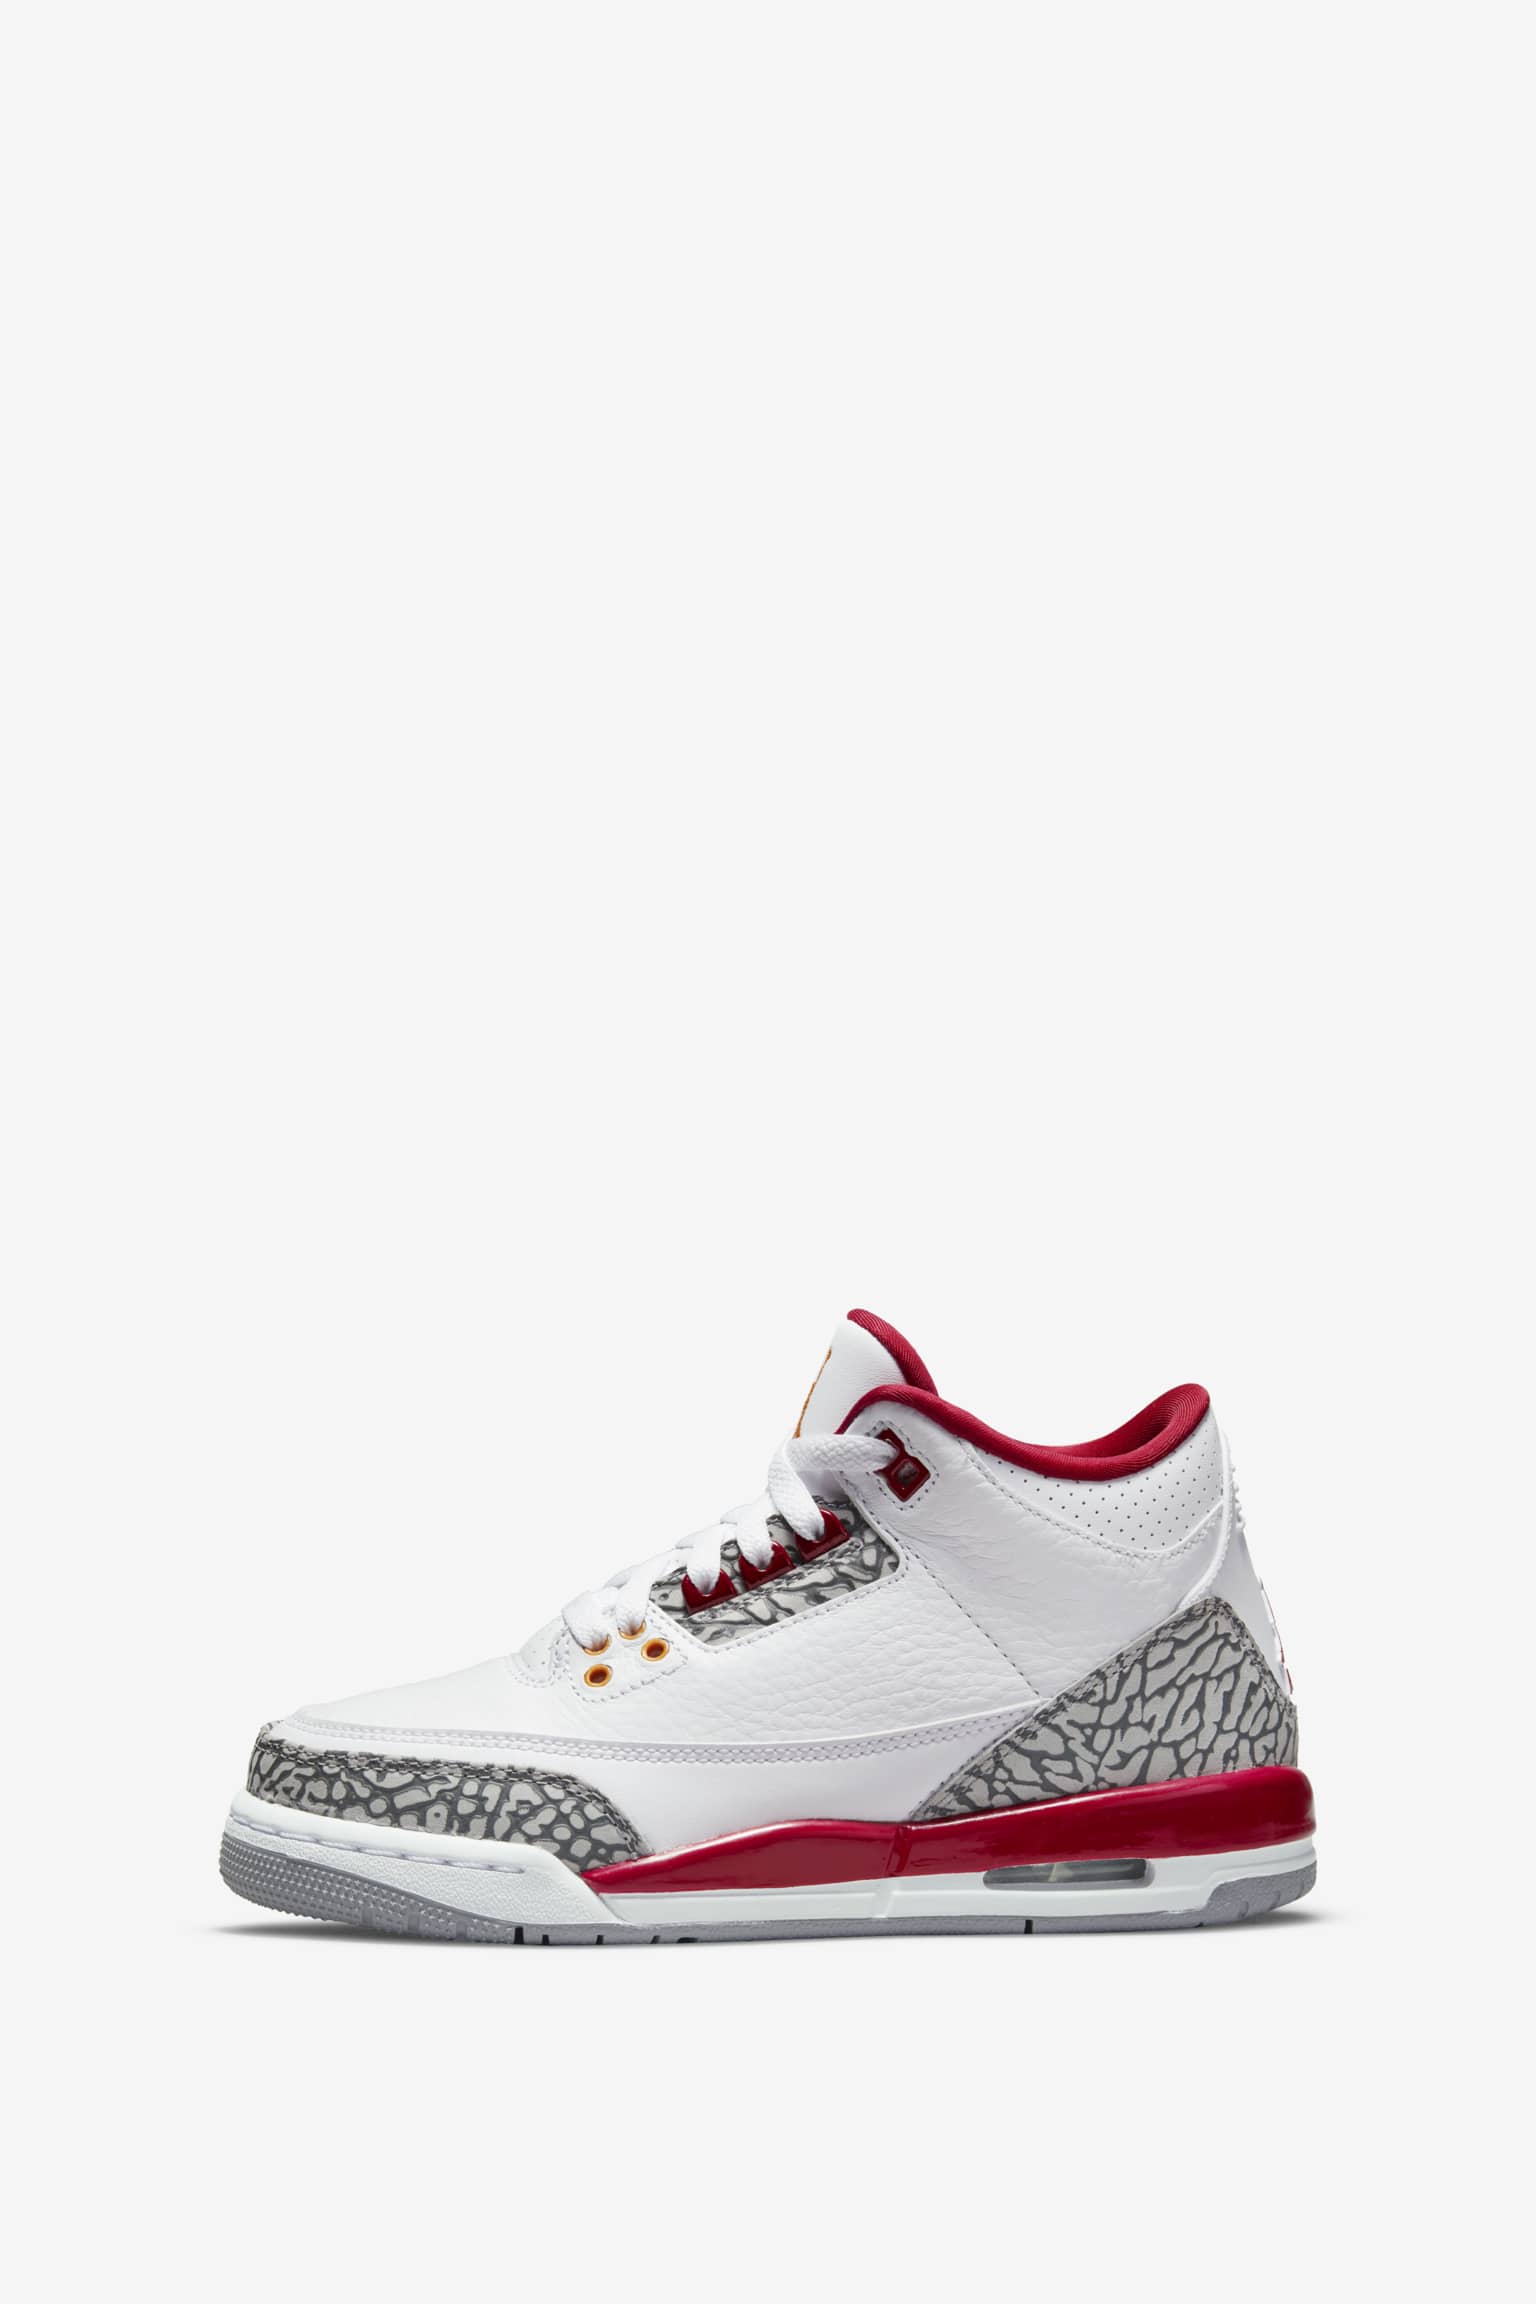 Air Jordan 3 Retro Cardinal Red - Sneakers CT8532-126